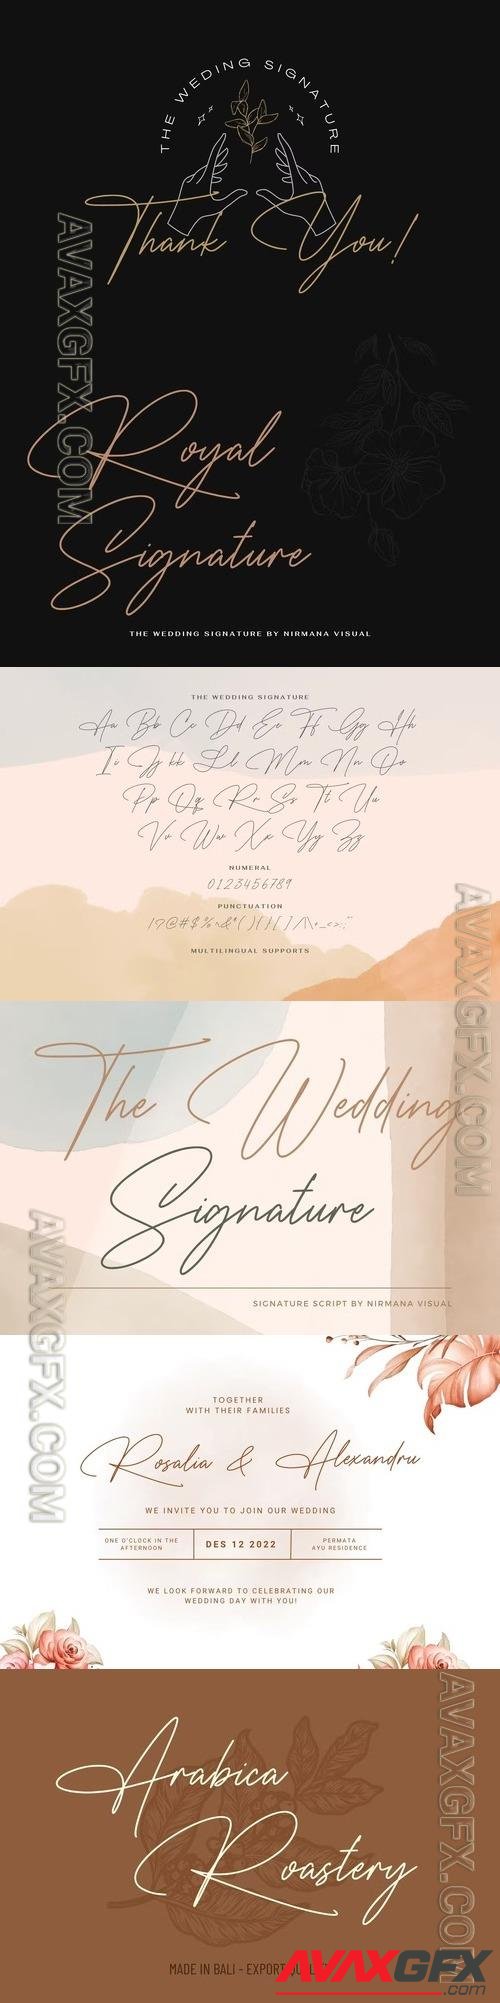 The Wedding Signature - Elegant Script LFH2U8K